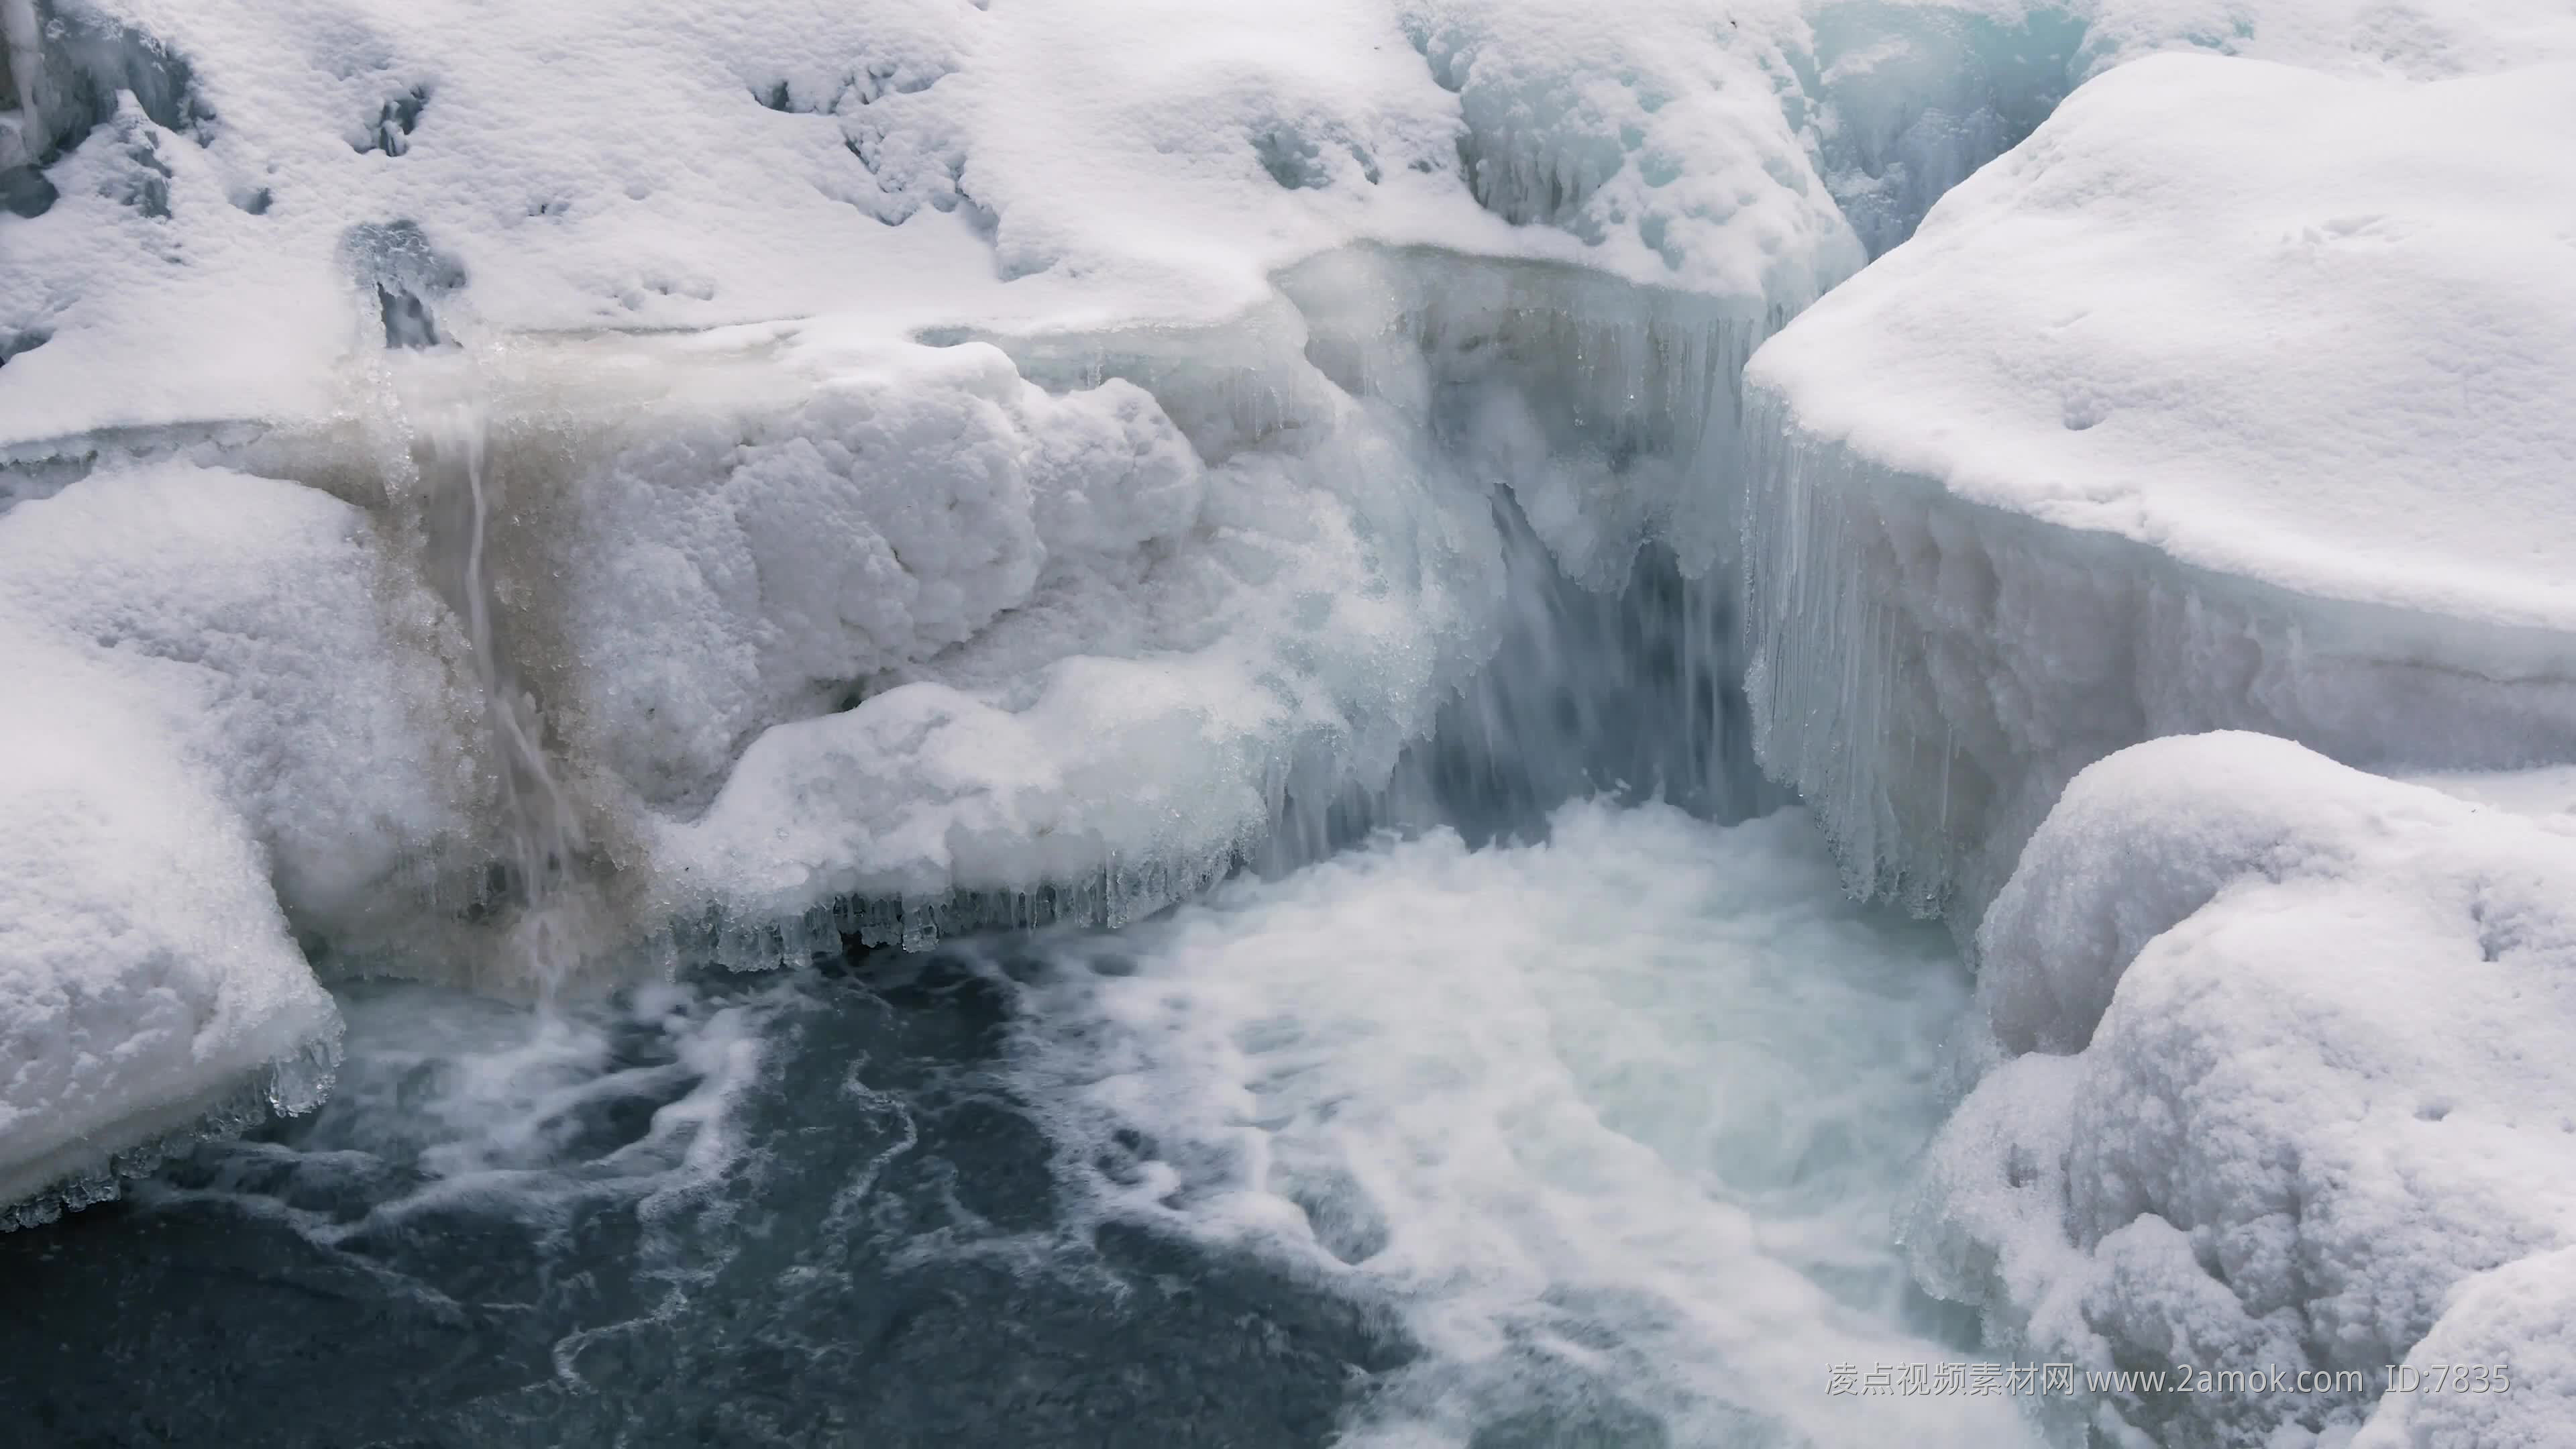 추운 겨울의 얼음폭포 사진 무료 다운로드 - Lovepik